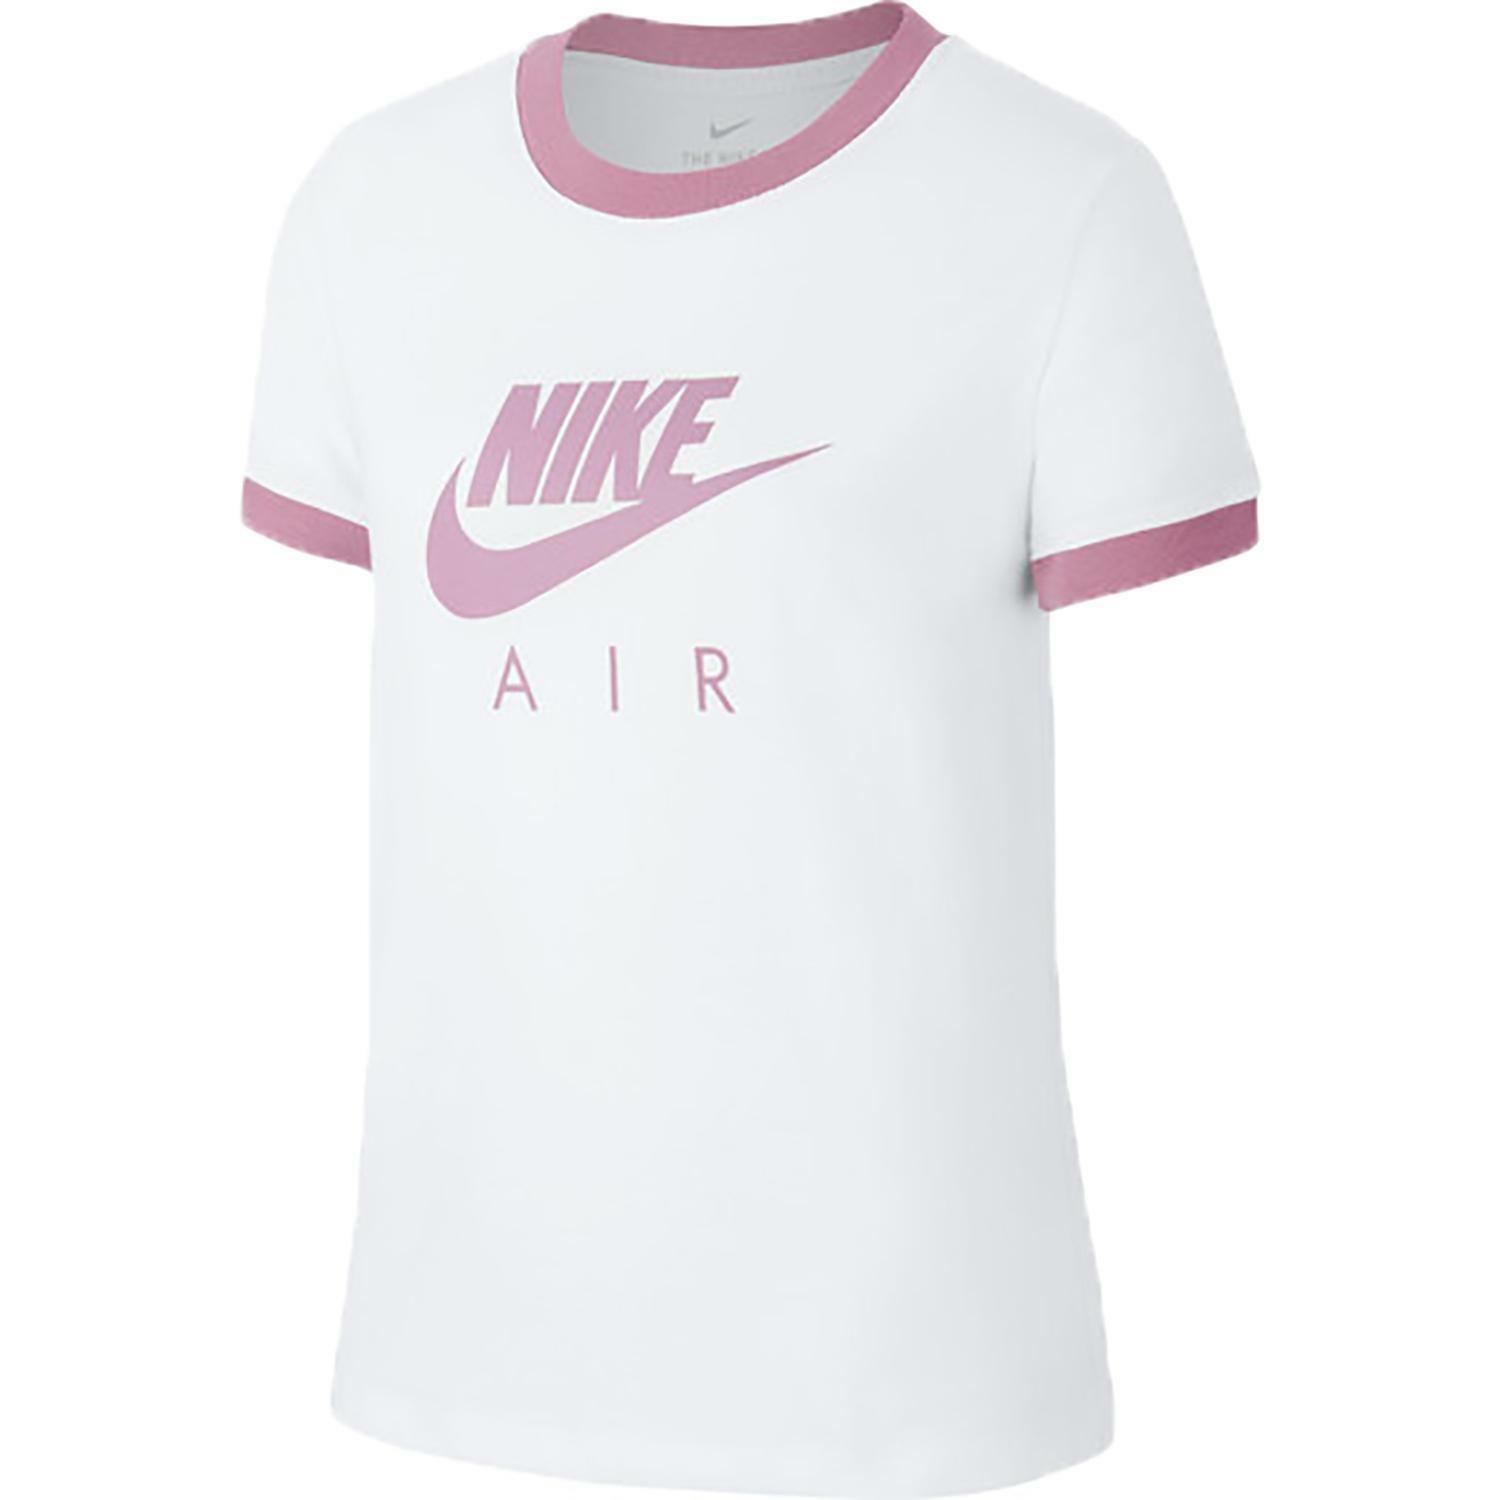 Nike t-shirt bambina bianca ci8325103